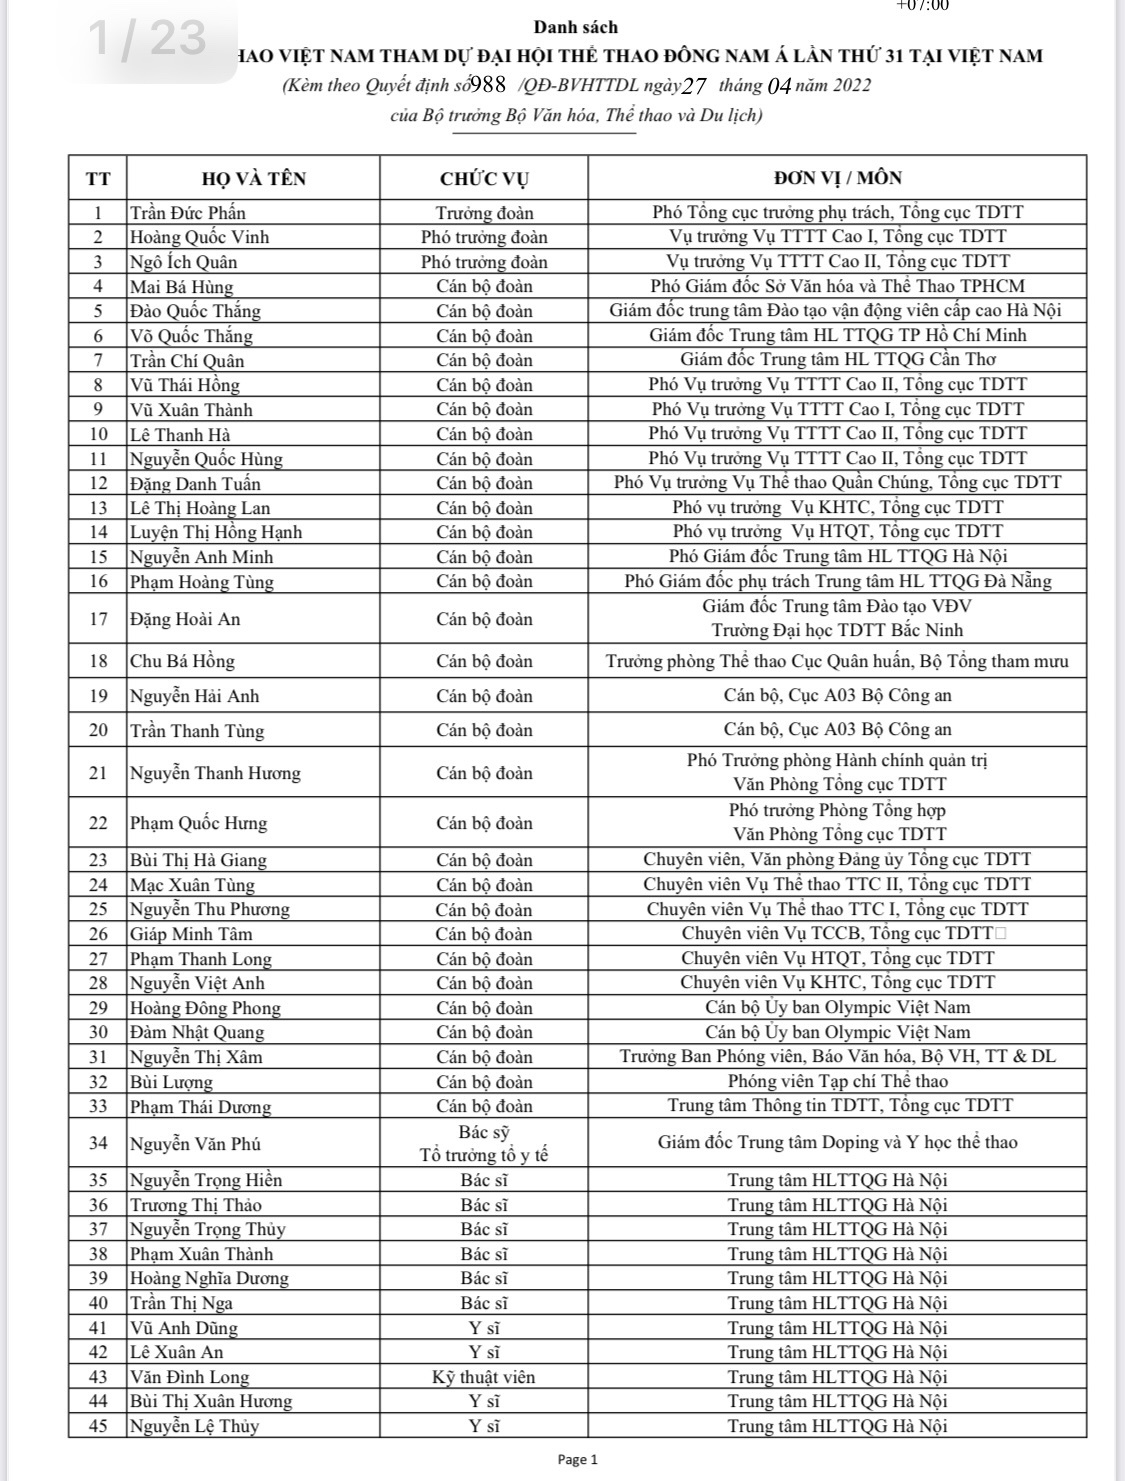 Danh sách tên tuổi, nội dung thi đấu của 951 VĐV đoàn TTVN dự SEA Games 31 - Ảnh 4.